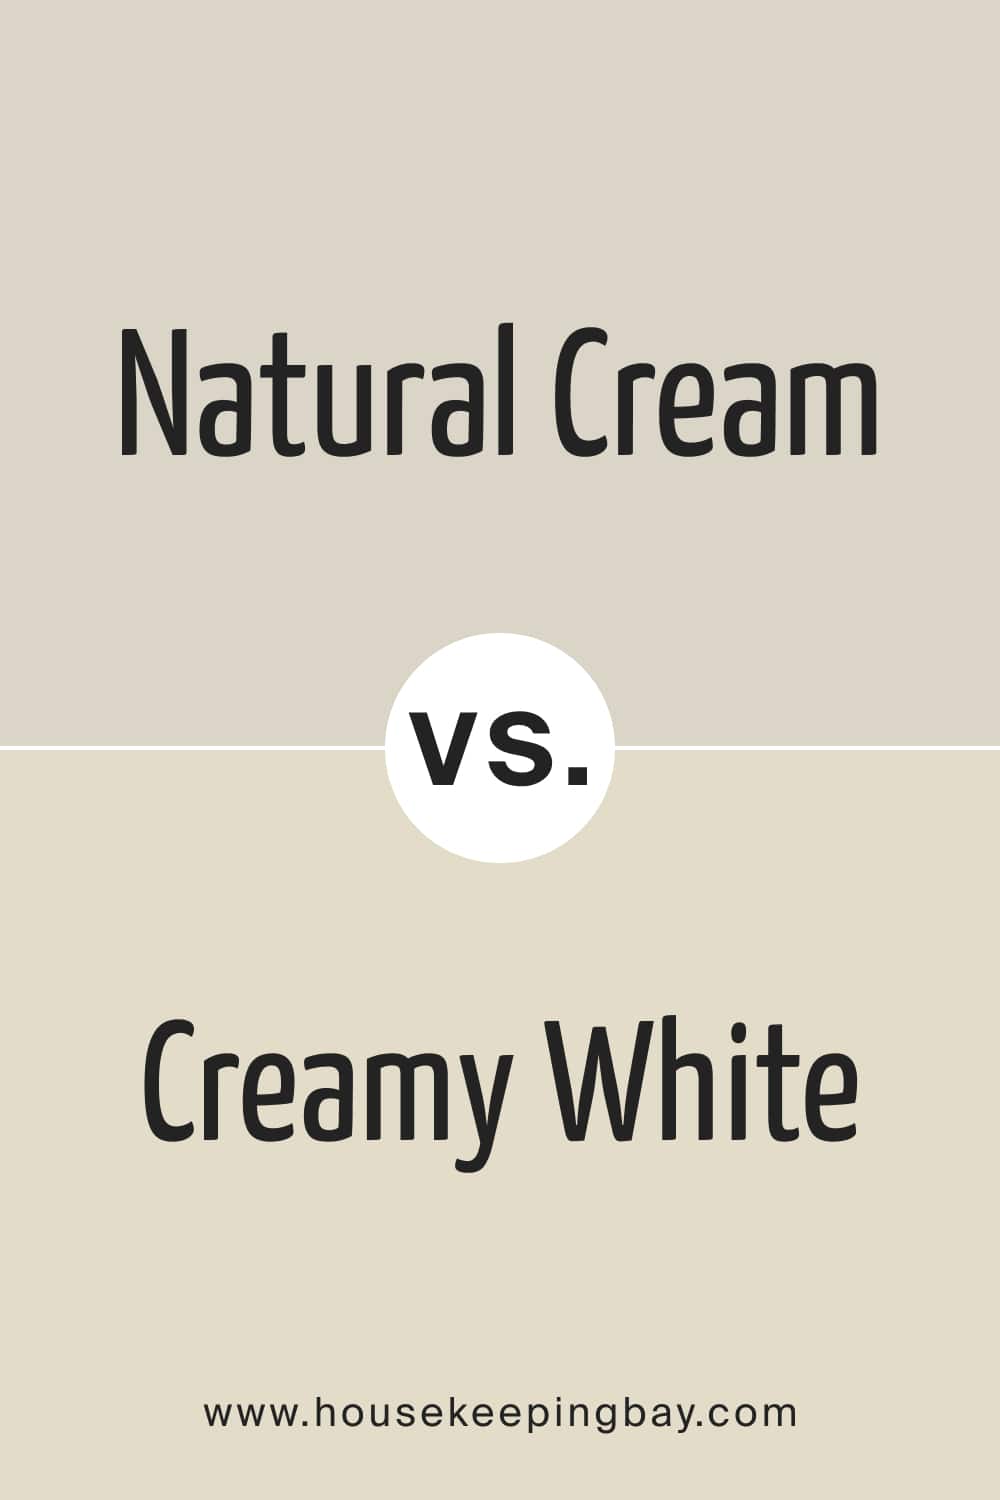 Natural Cream vs Creamy White